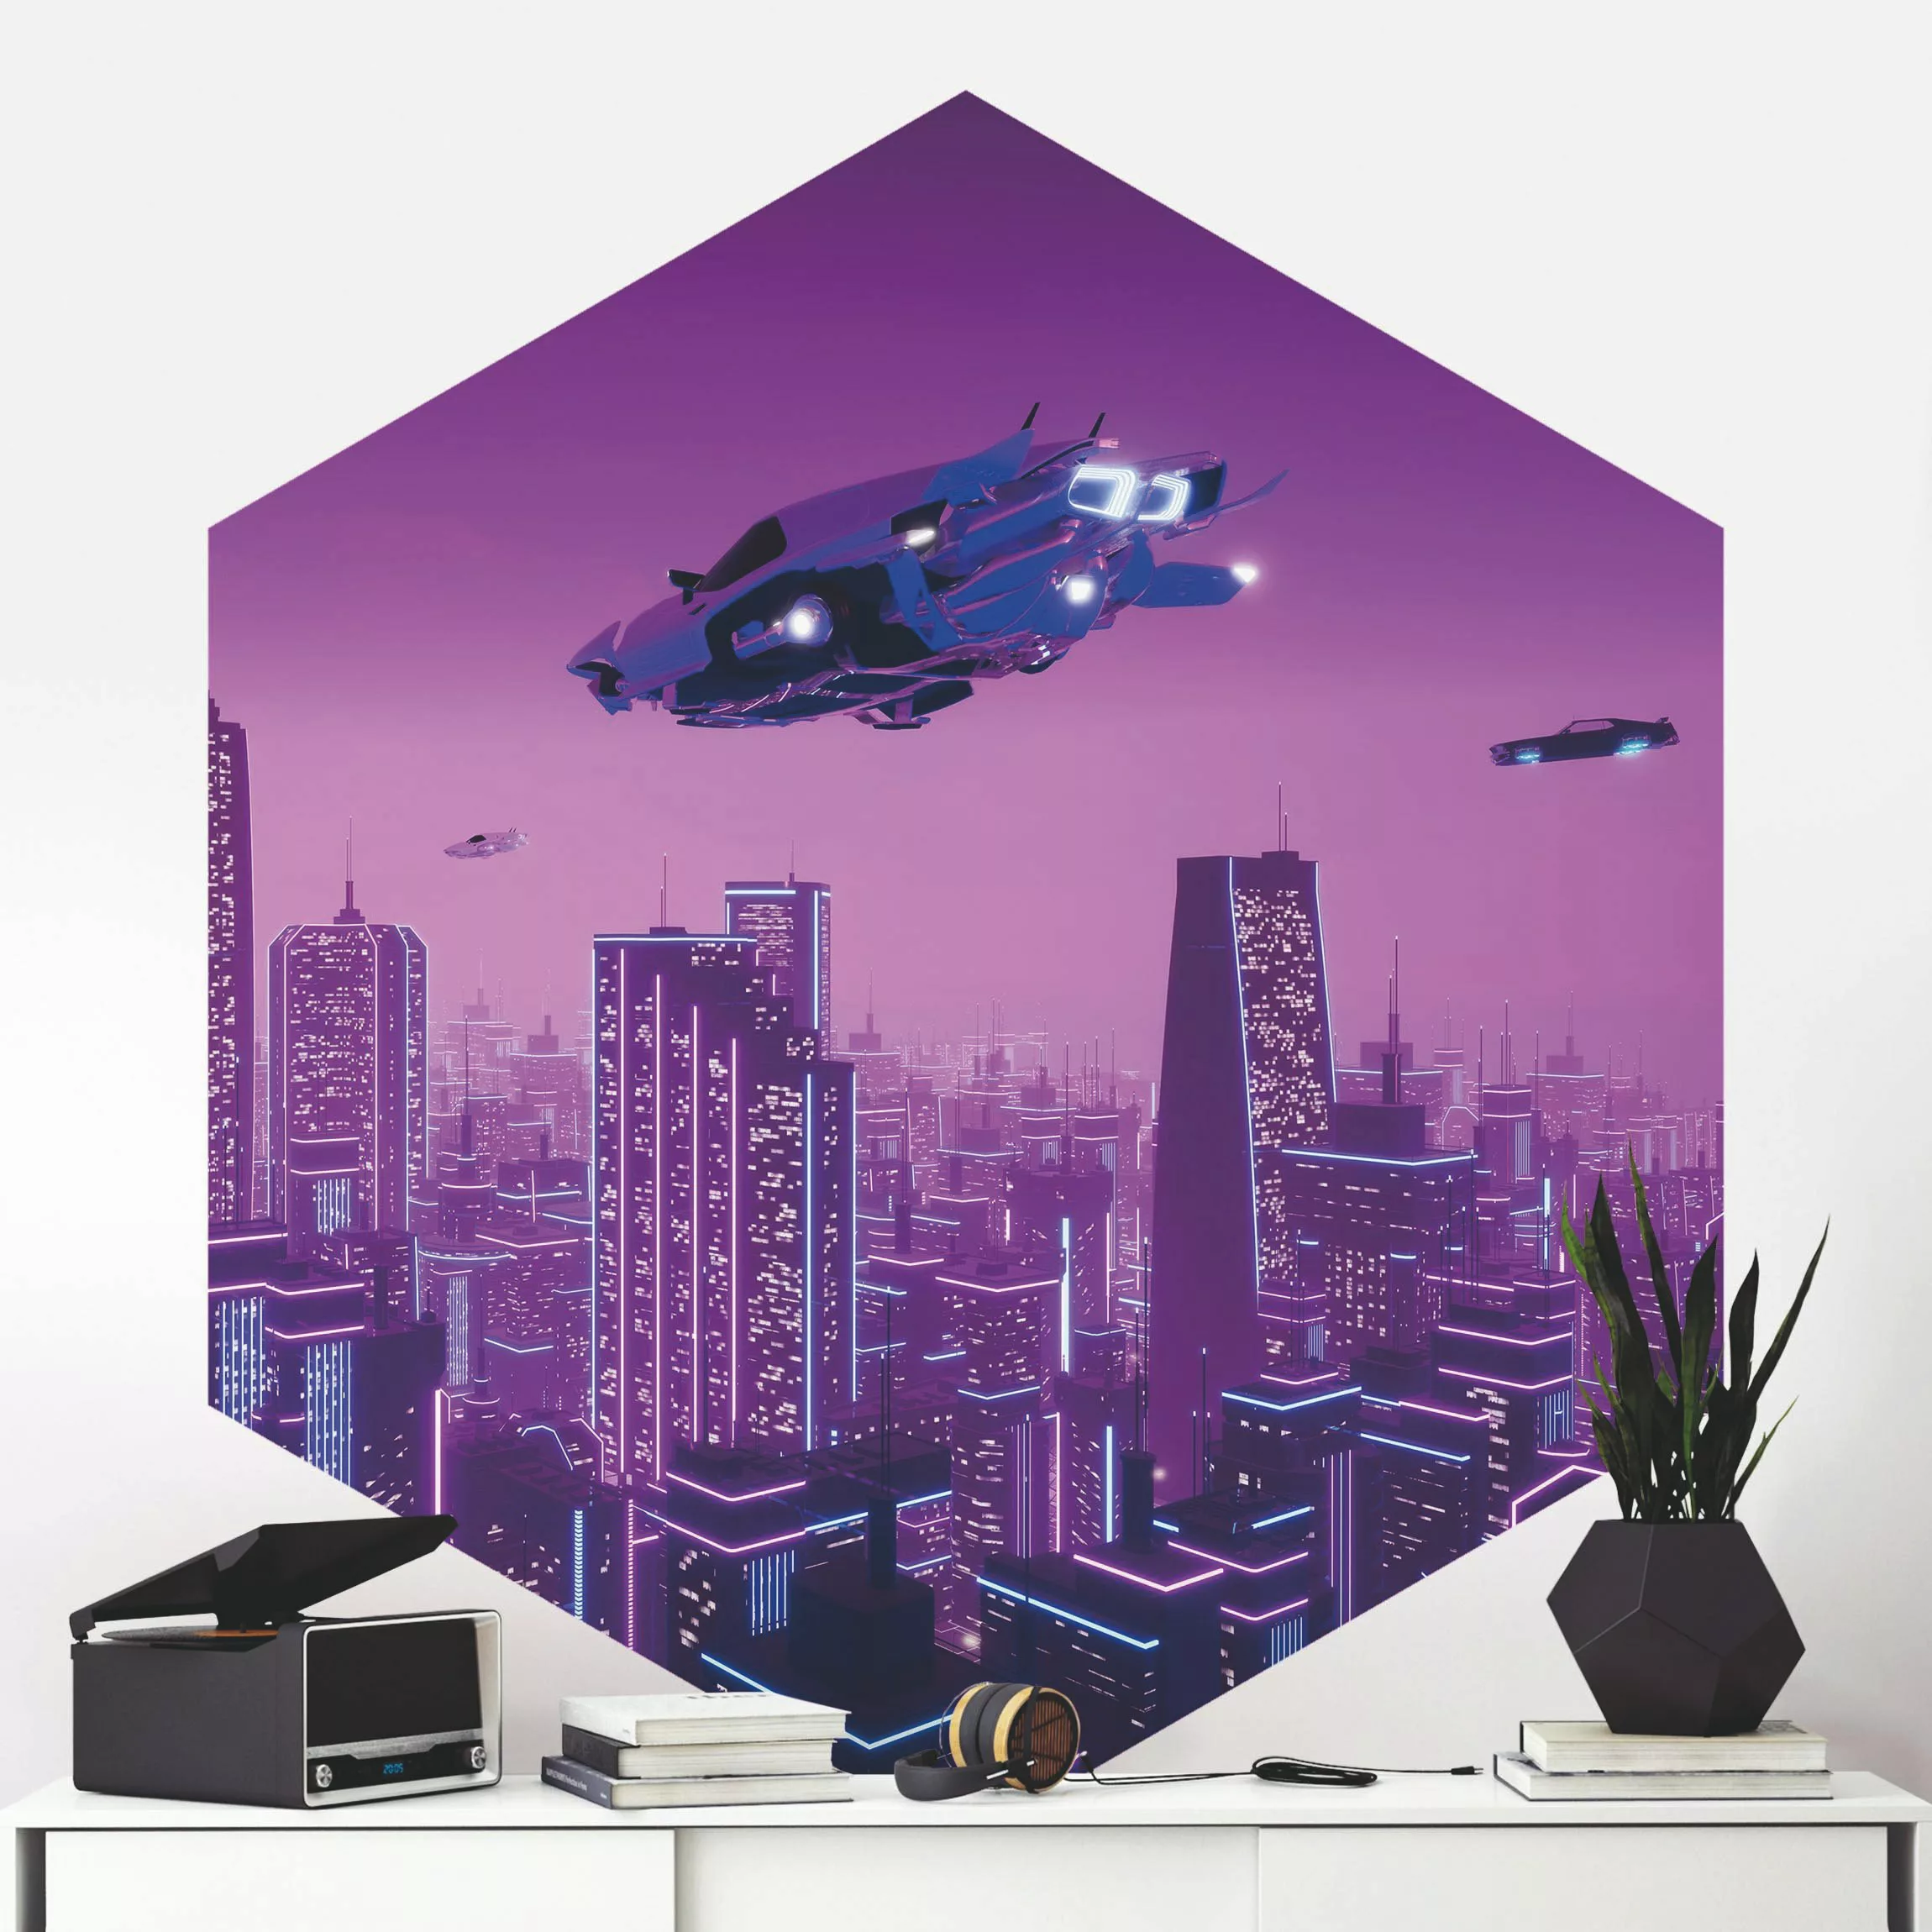 Hexagon Mustertapete selbstklebend Stadt im Neonlicht mit Raumschiffen günstig online kaufen